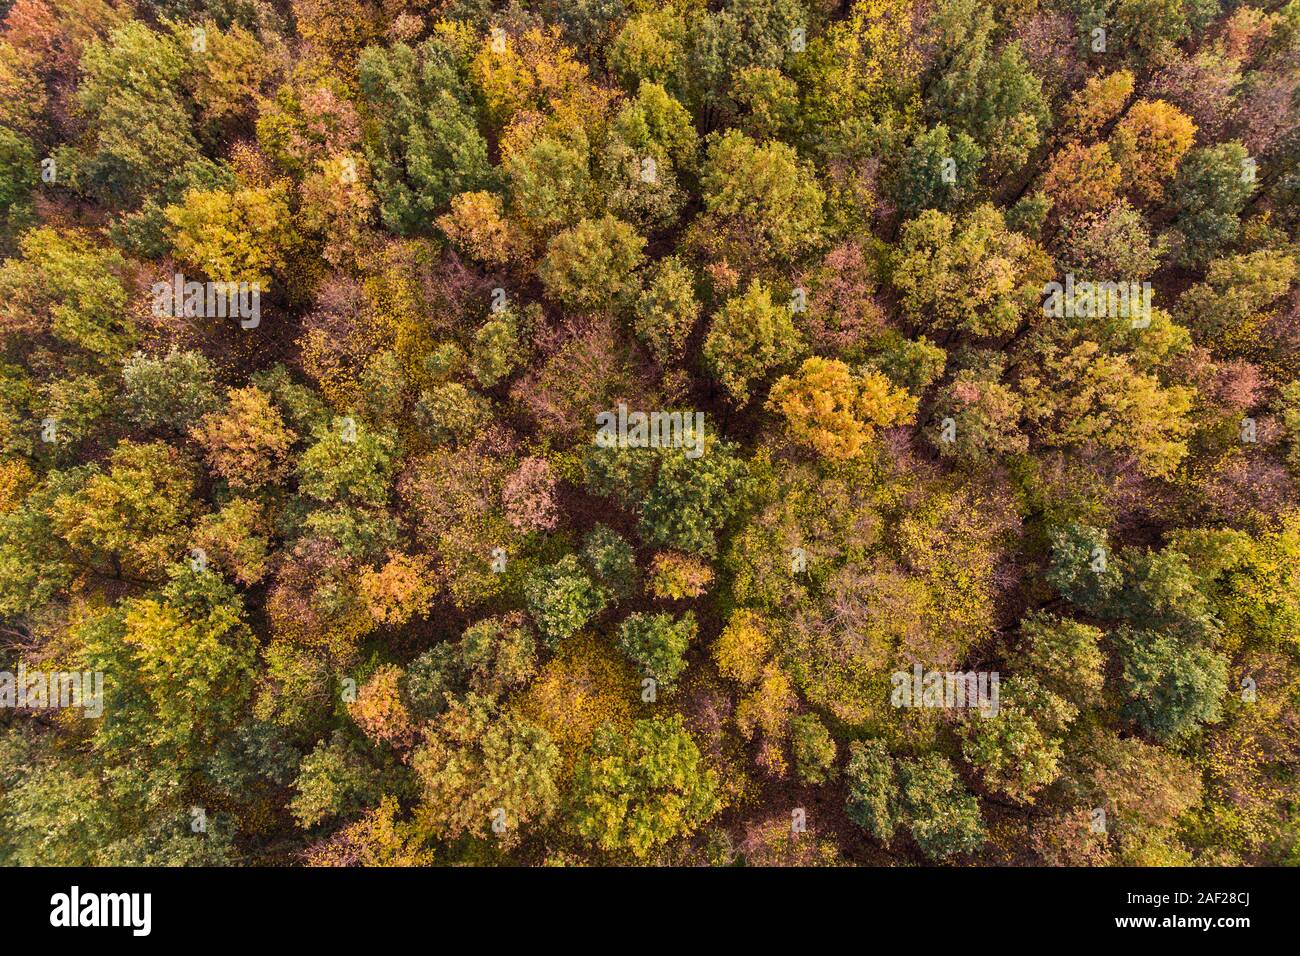 En otoño, los árboles de colores otoñales de las copas de los árboles en el otoño, Toma aérea de un bosque, los árboles de hoja caduca, los colores de la naturaleza en otoño, vista panorámica, Europa. Foto de stock